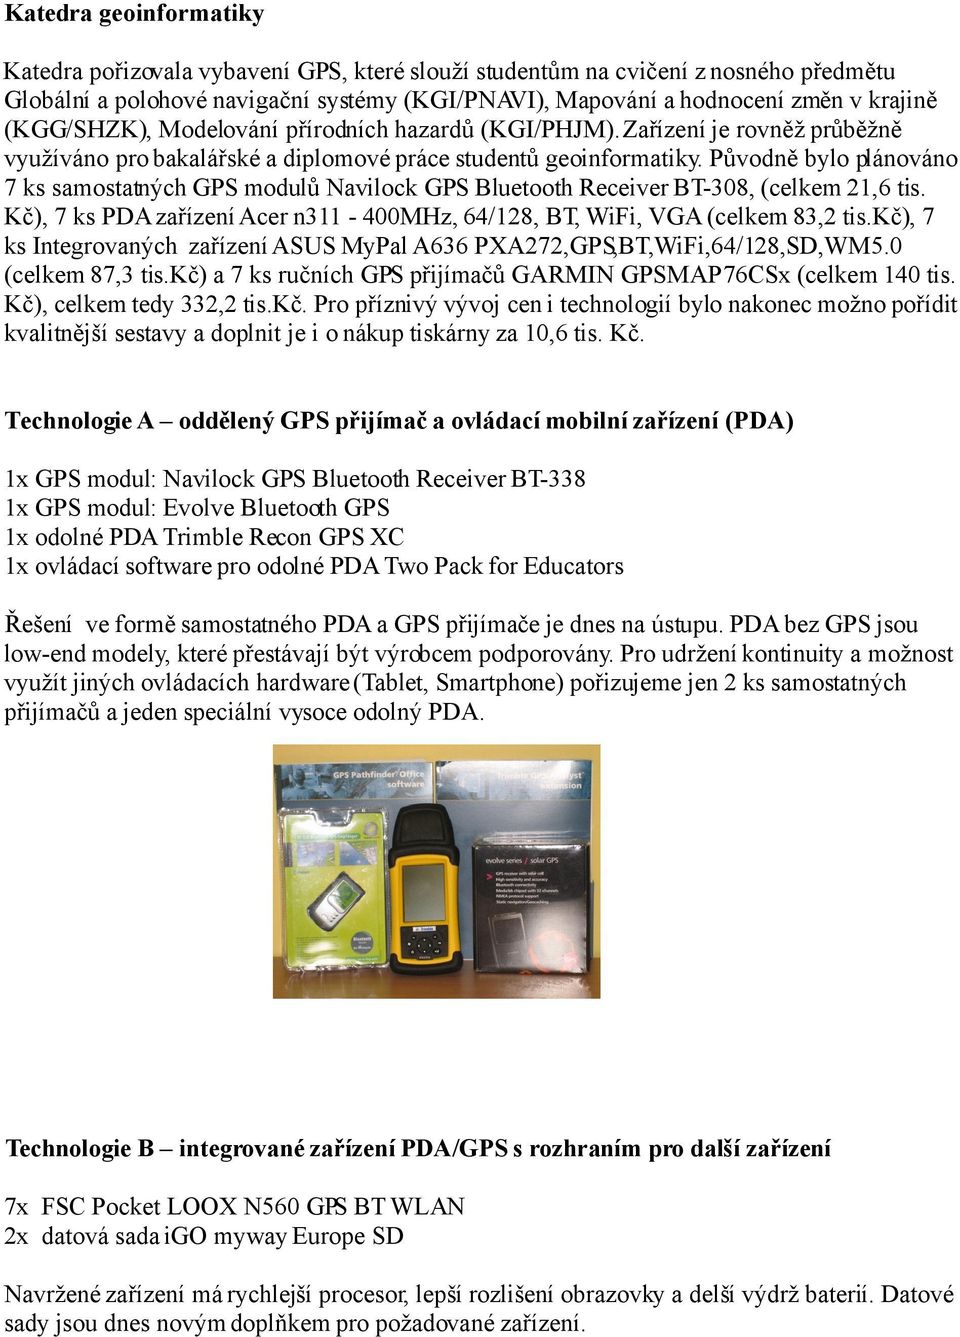 Původně bylo plánováno 7 ks samostatných GPS modulů Navilock GPS Bluetooth Receiver BT-308, (celkem 21,6 tis. Kč), 7 ks PDA zařízení Acer n311-400mhz, 64/128, BT, WiFi, VGA (celkem 83,2 tis.